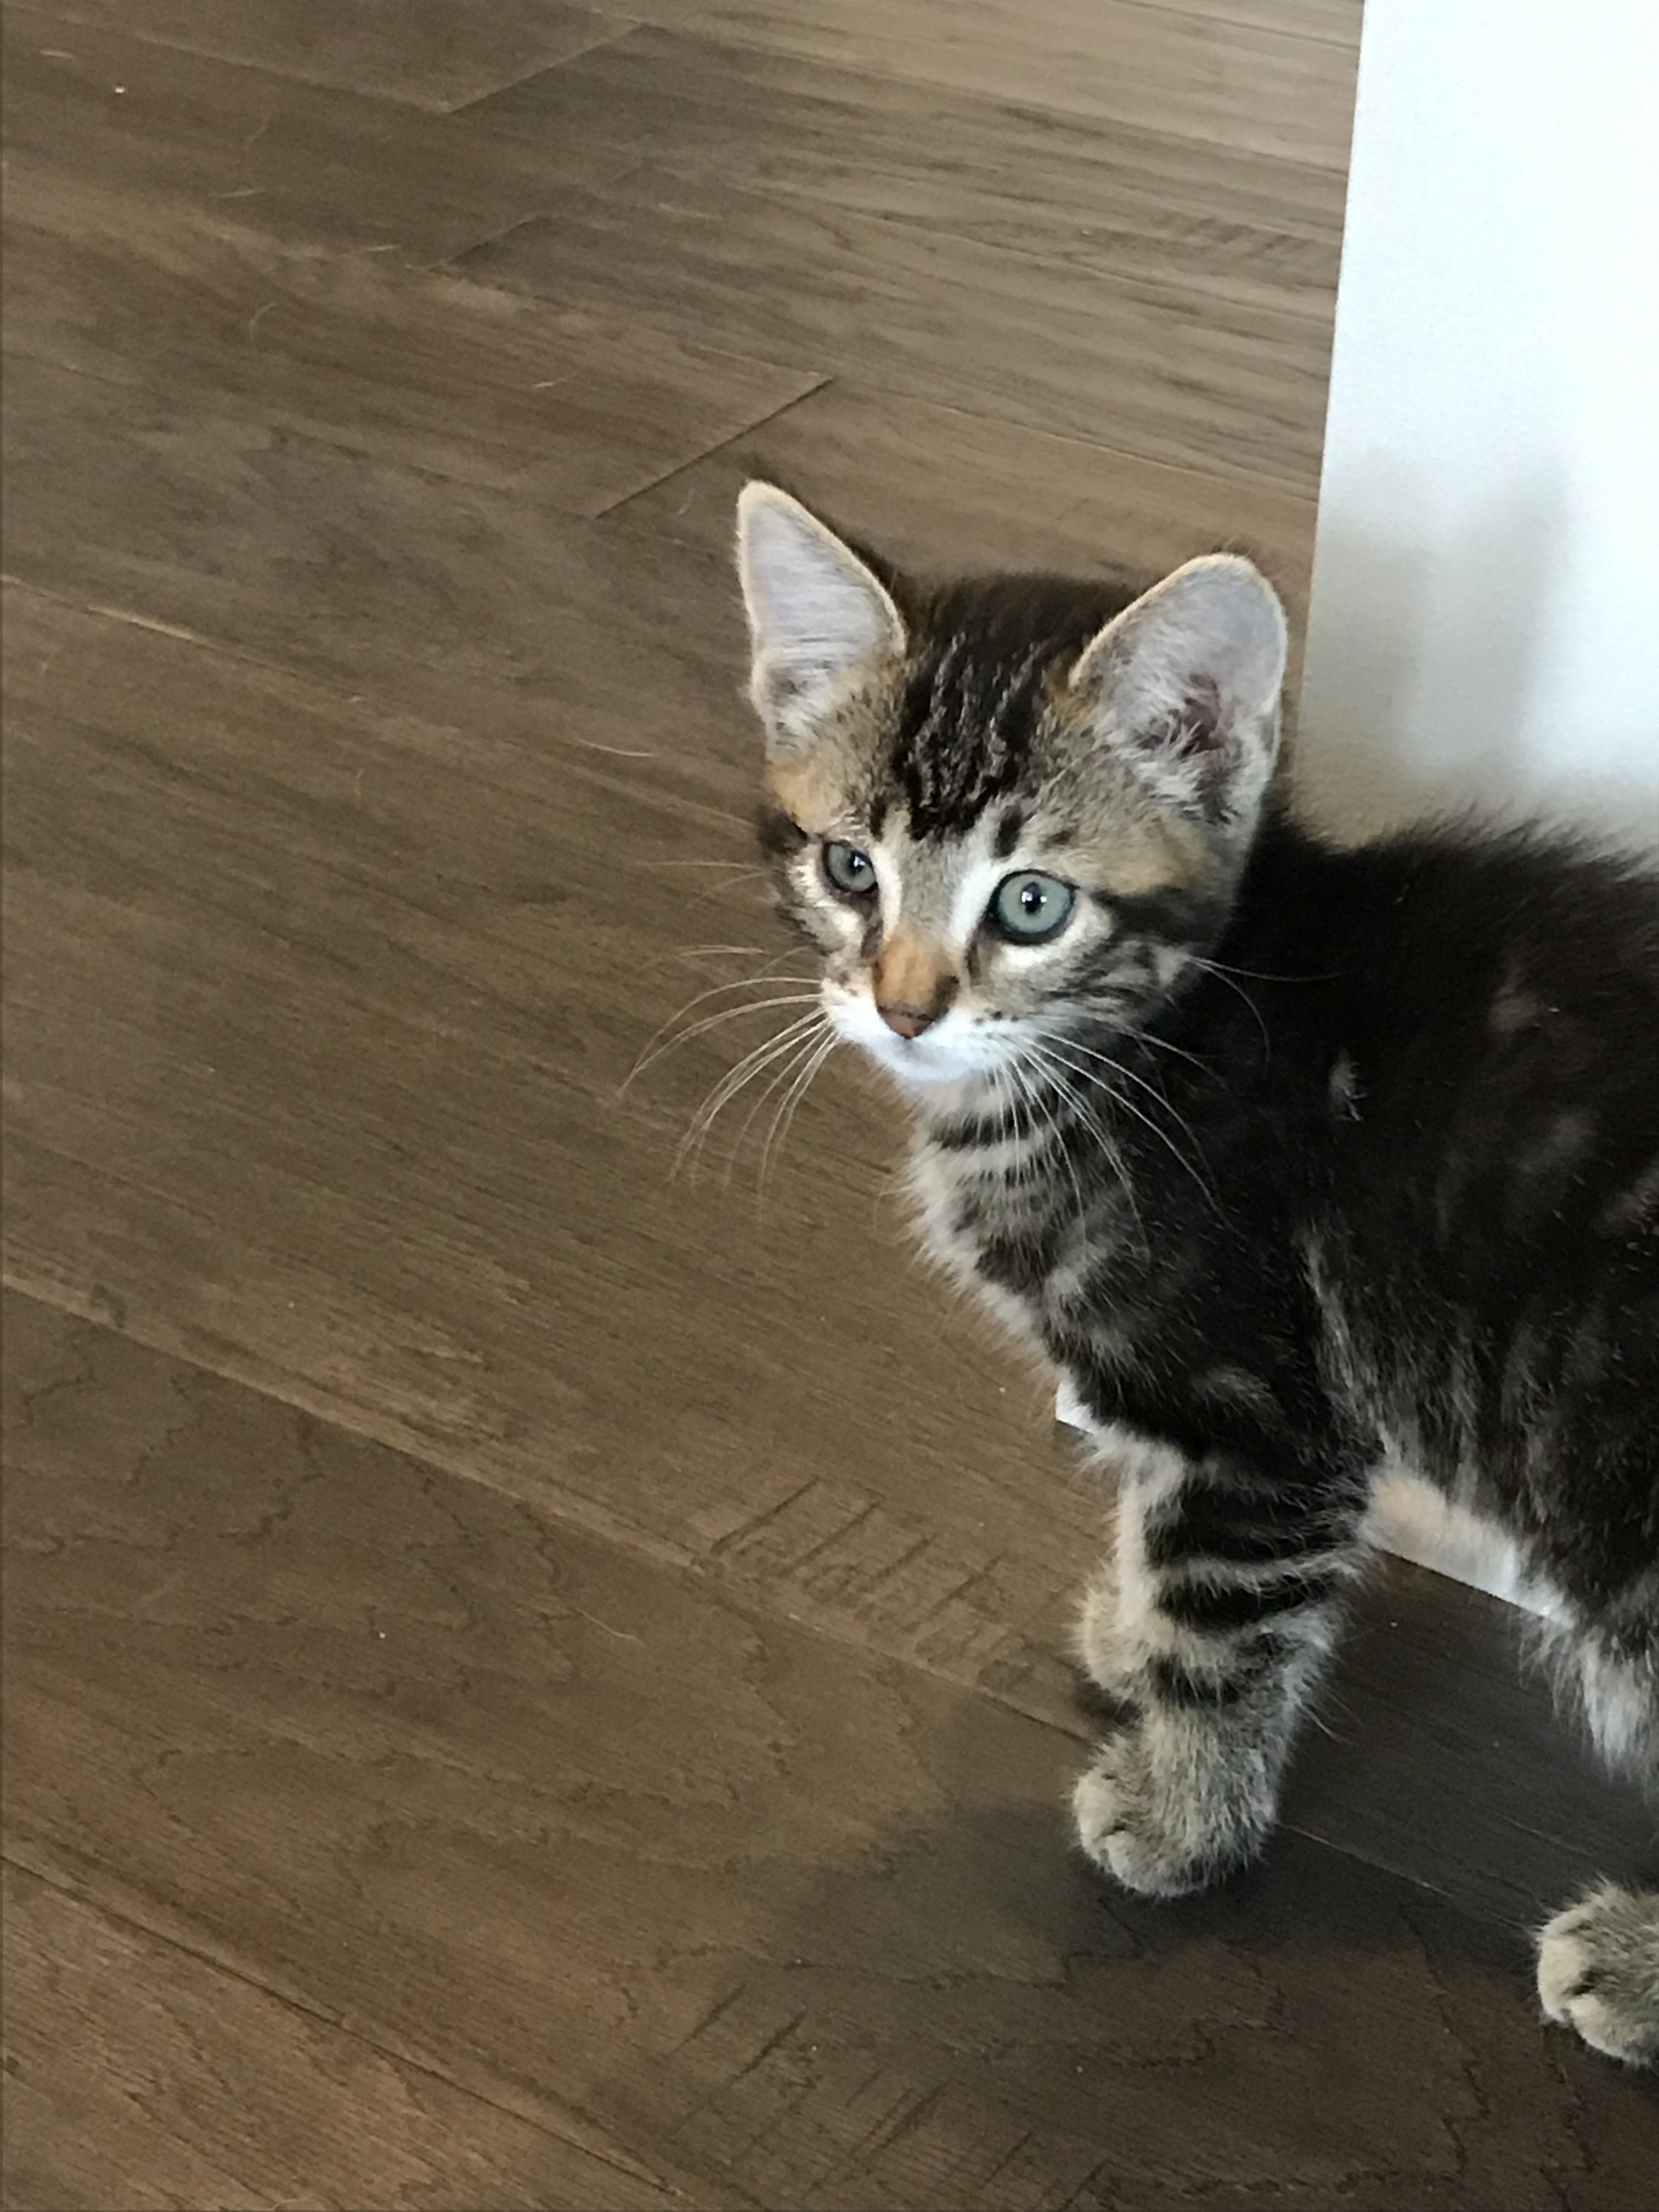 New Kitten